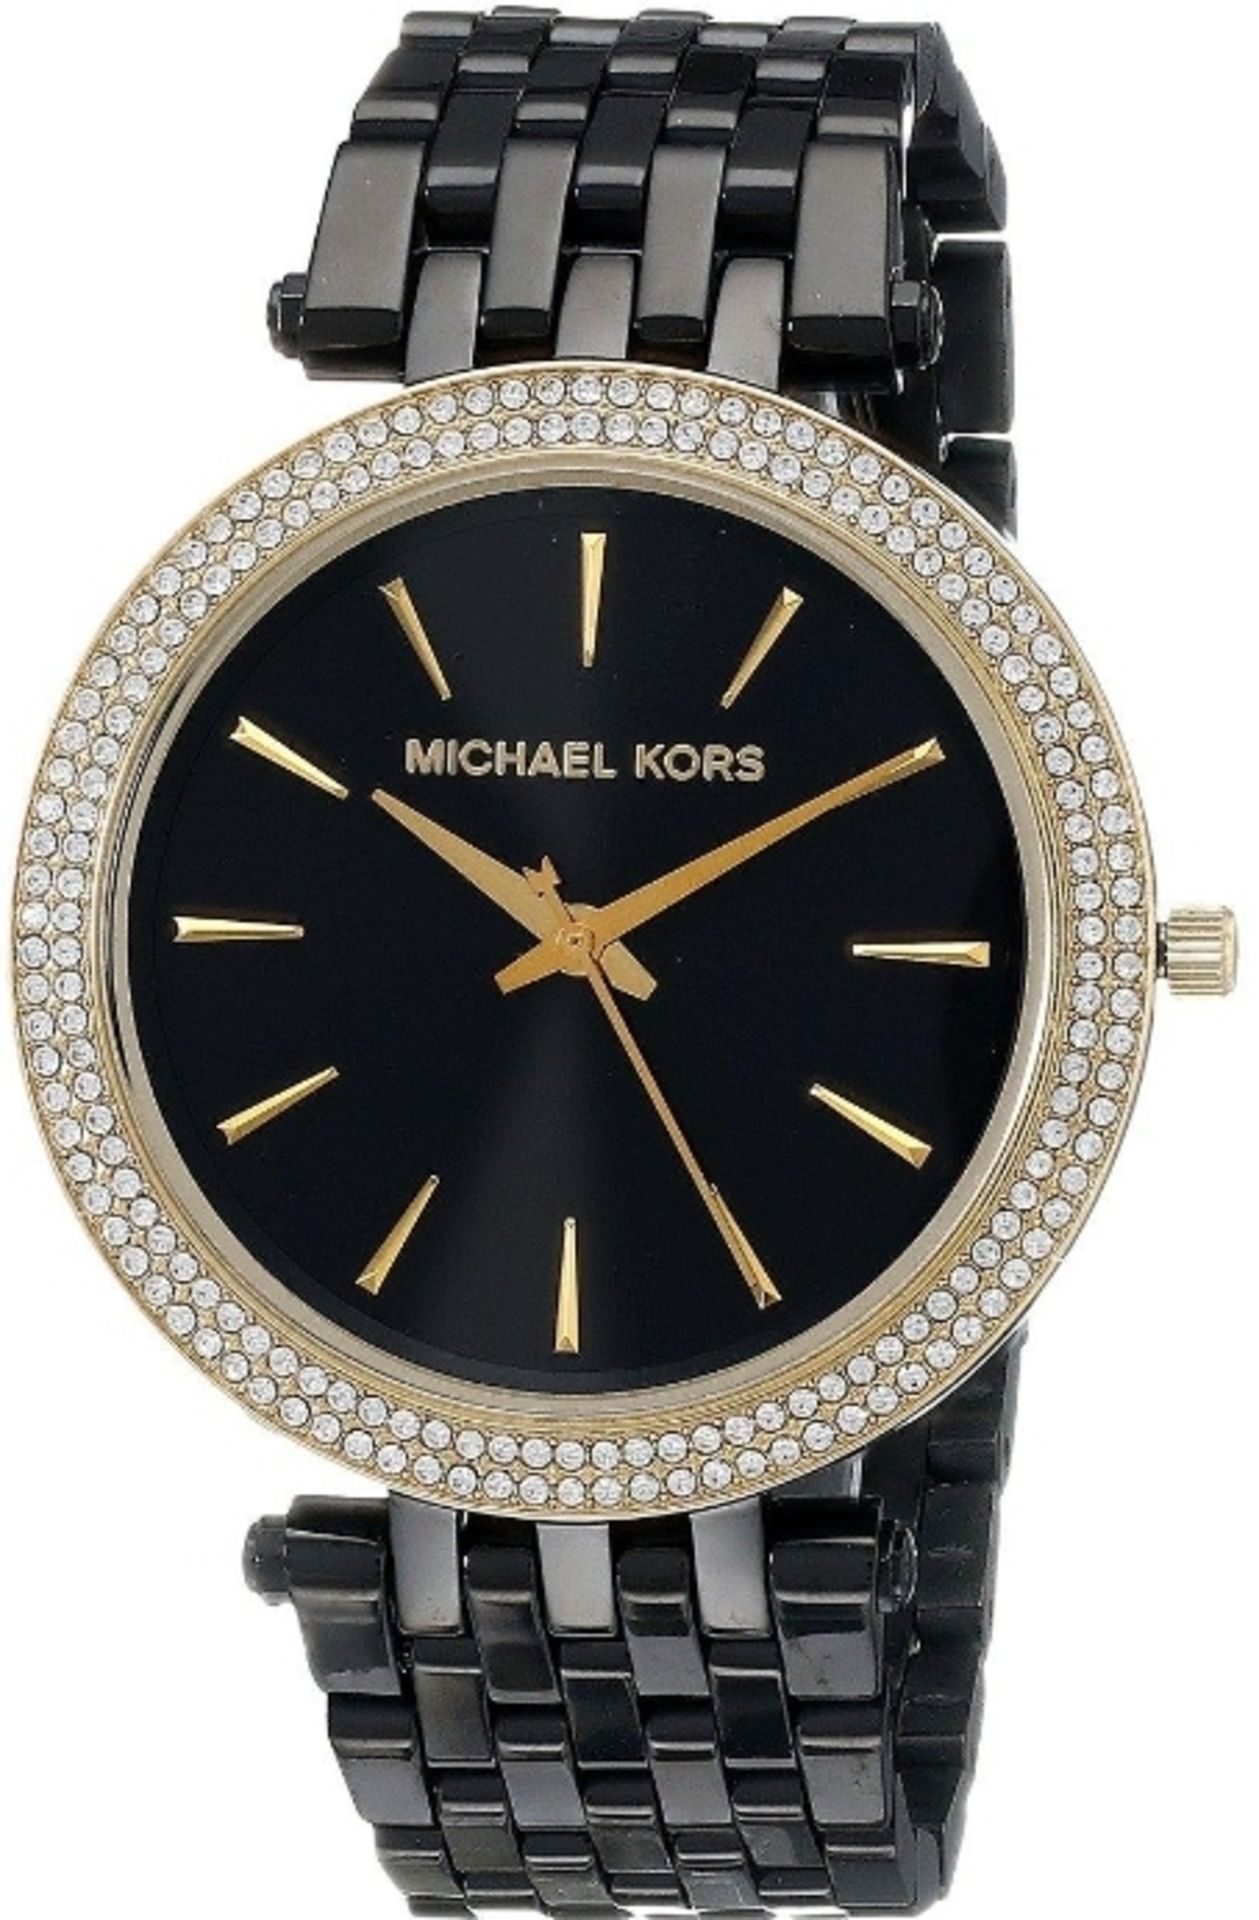 Michael Kors MK3322 Darci Gold & Black Stainless Steel Ladies Watch - Image 3 of 7